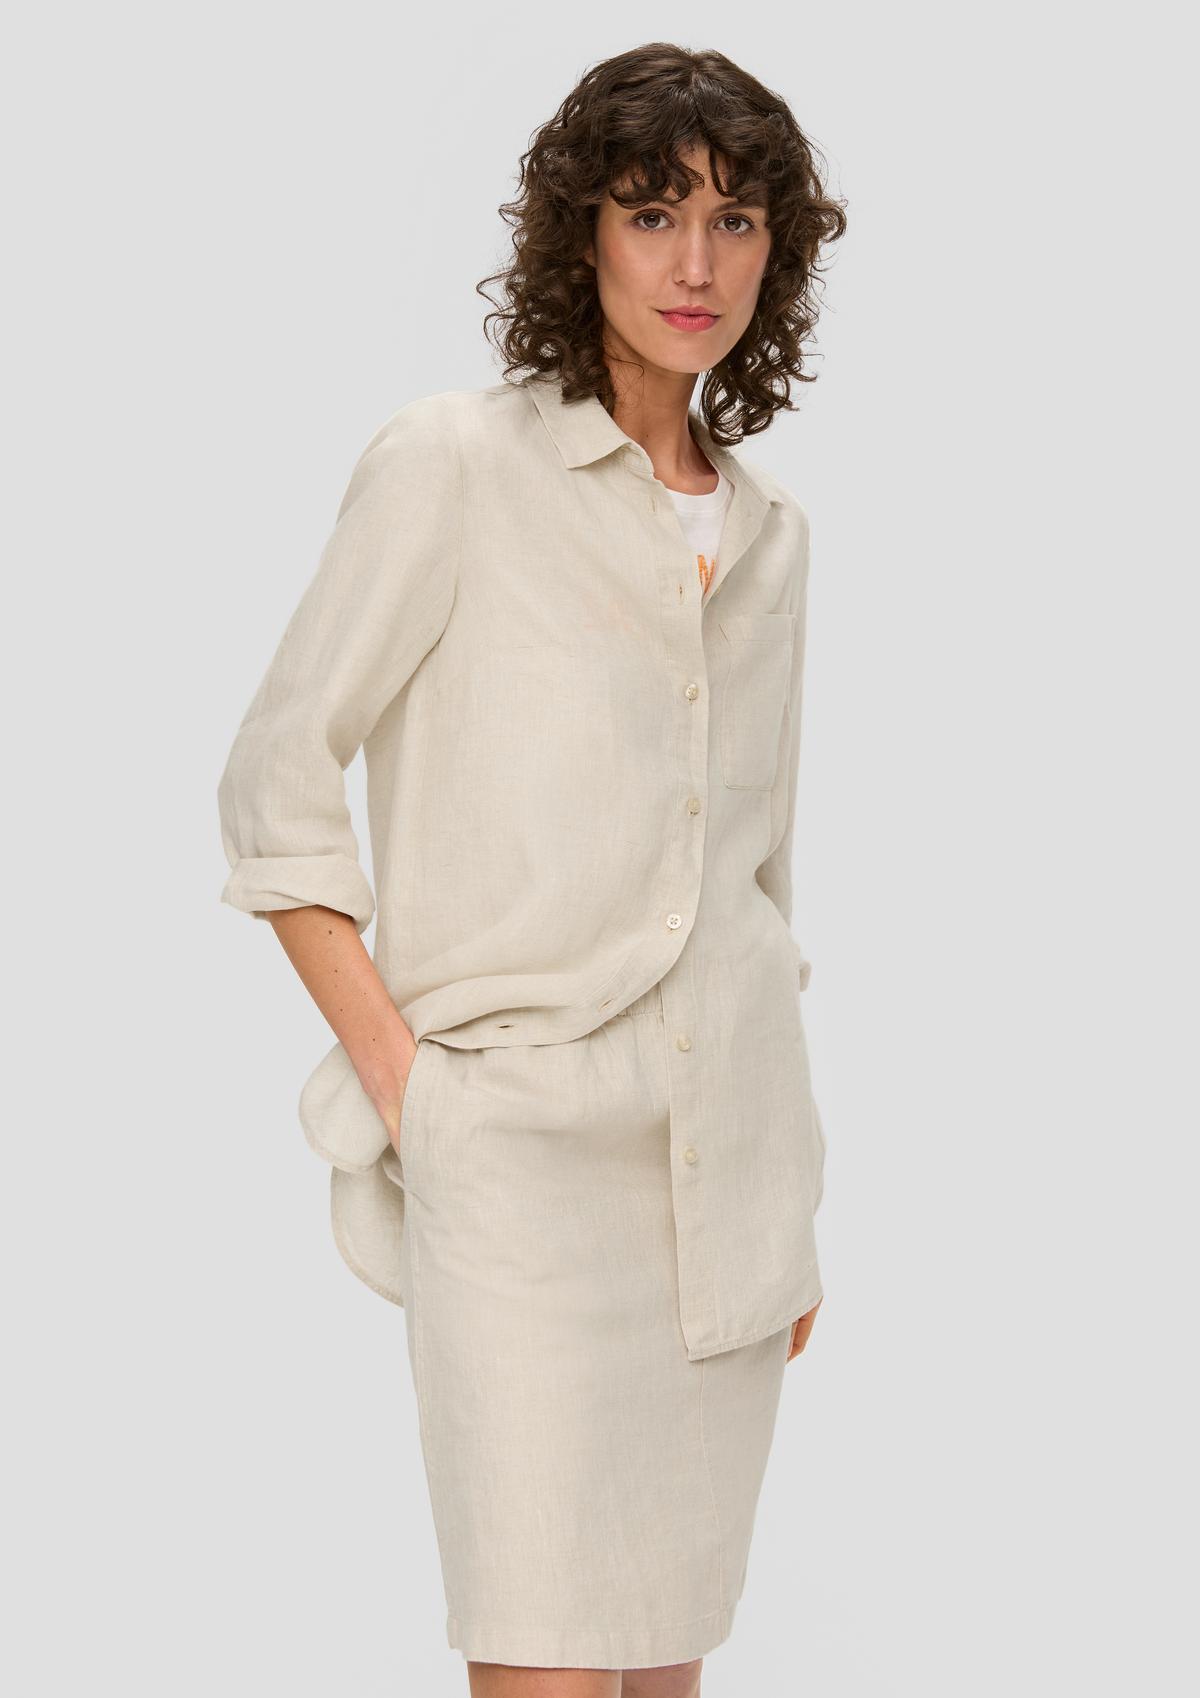 Long shirt blouse made of linen